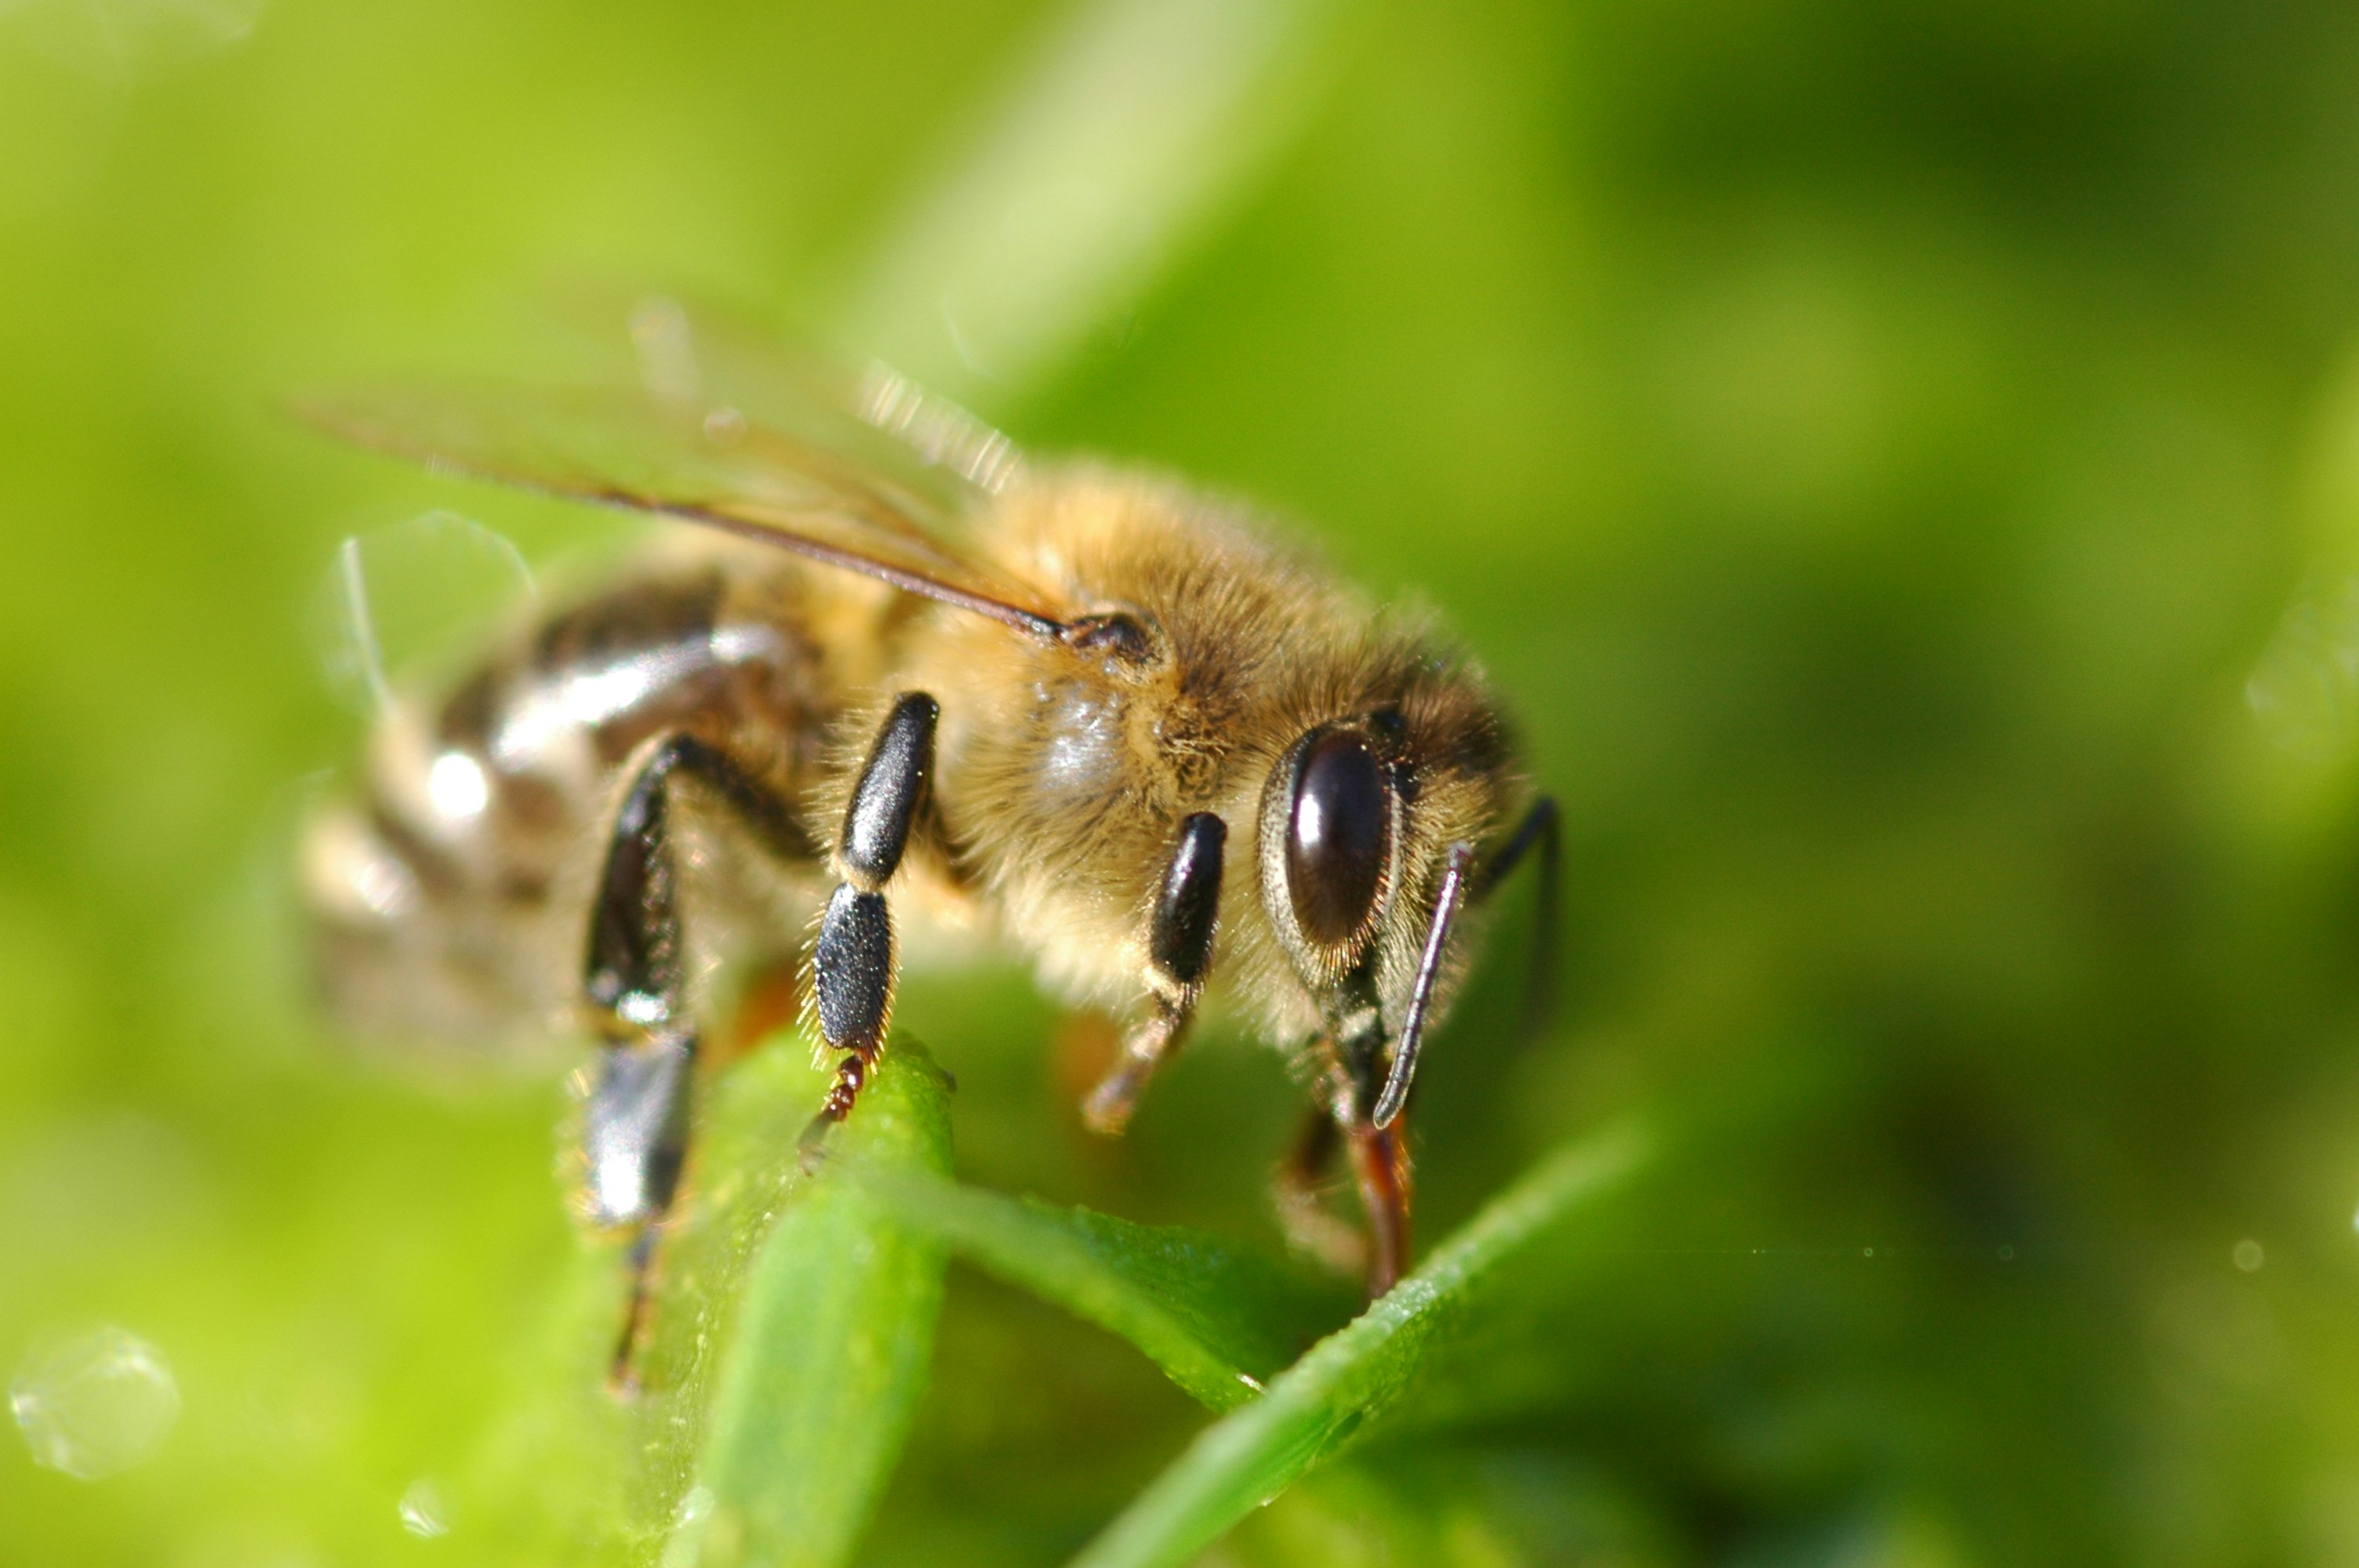 Best apis. АПИС меллифика. Дикая медоносная пчела. APIS mellifica (пчела медоносная) гомеопатия. Гималайская медоносная пчела.